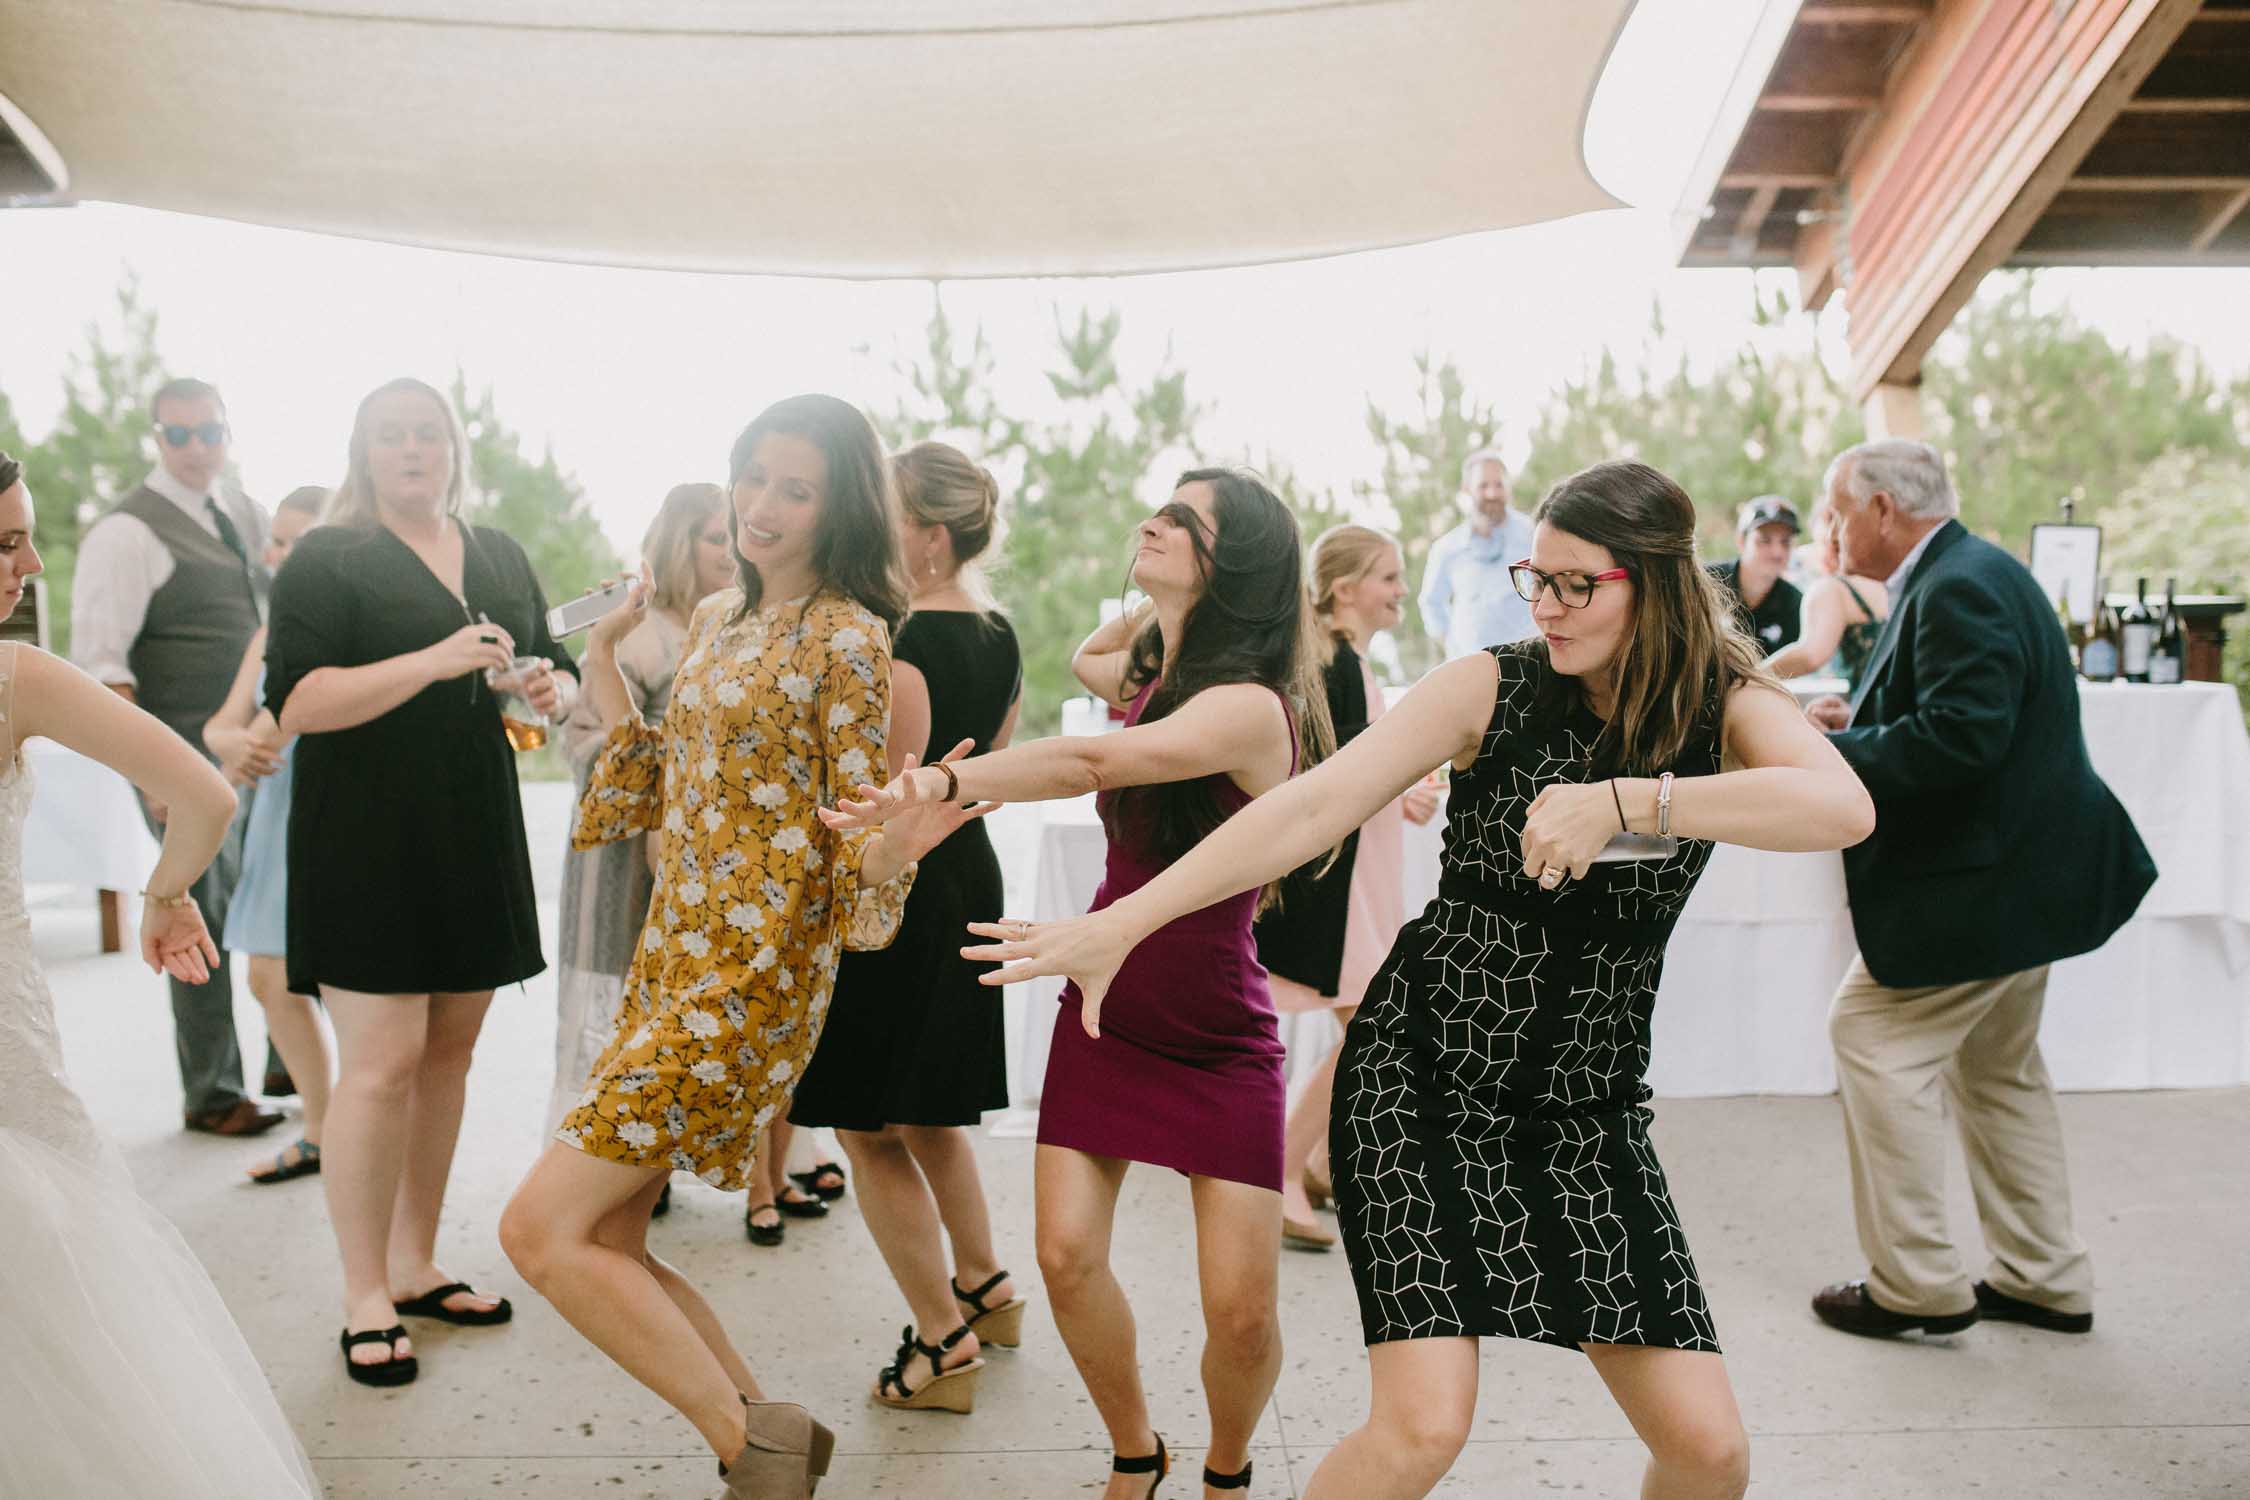 Women dancing on the dance floor at an outdoor wedding.